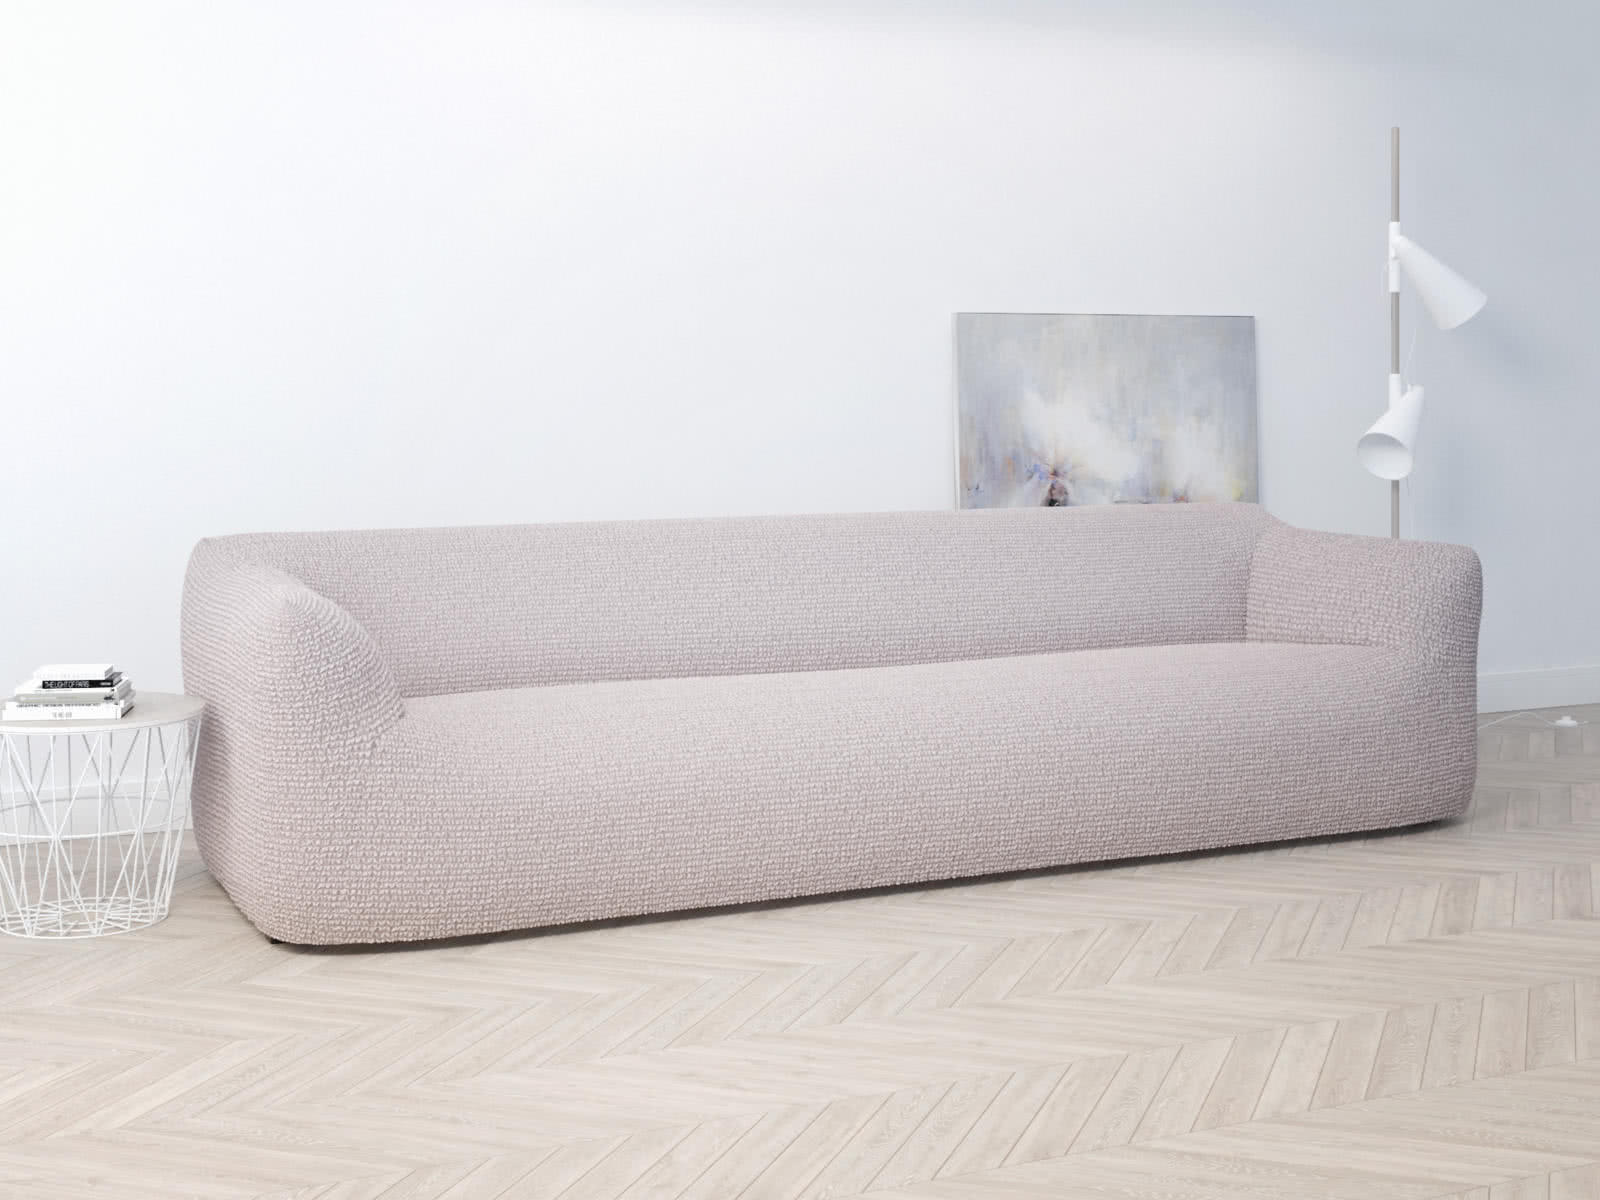 Купить Чехол на четырехместный диван Dreamline 230-310 см, бледно-розовый бледно-розовый недорого в интернет-магазине